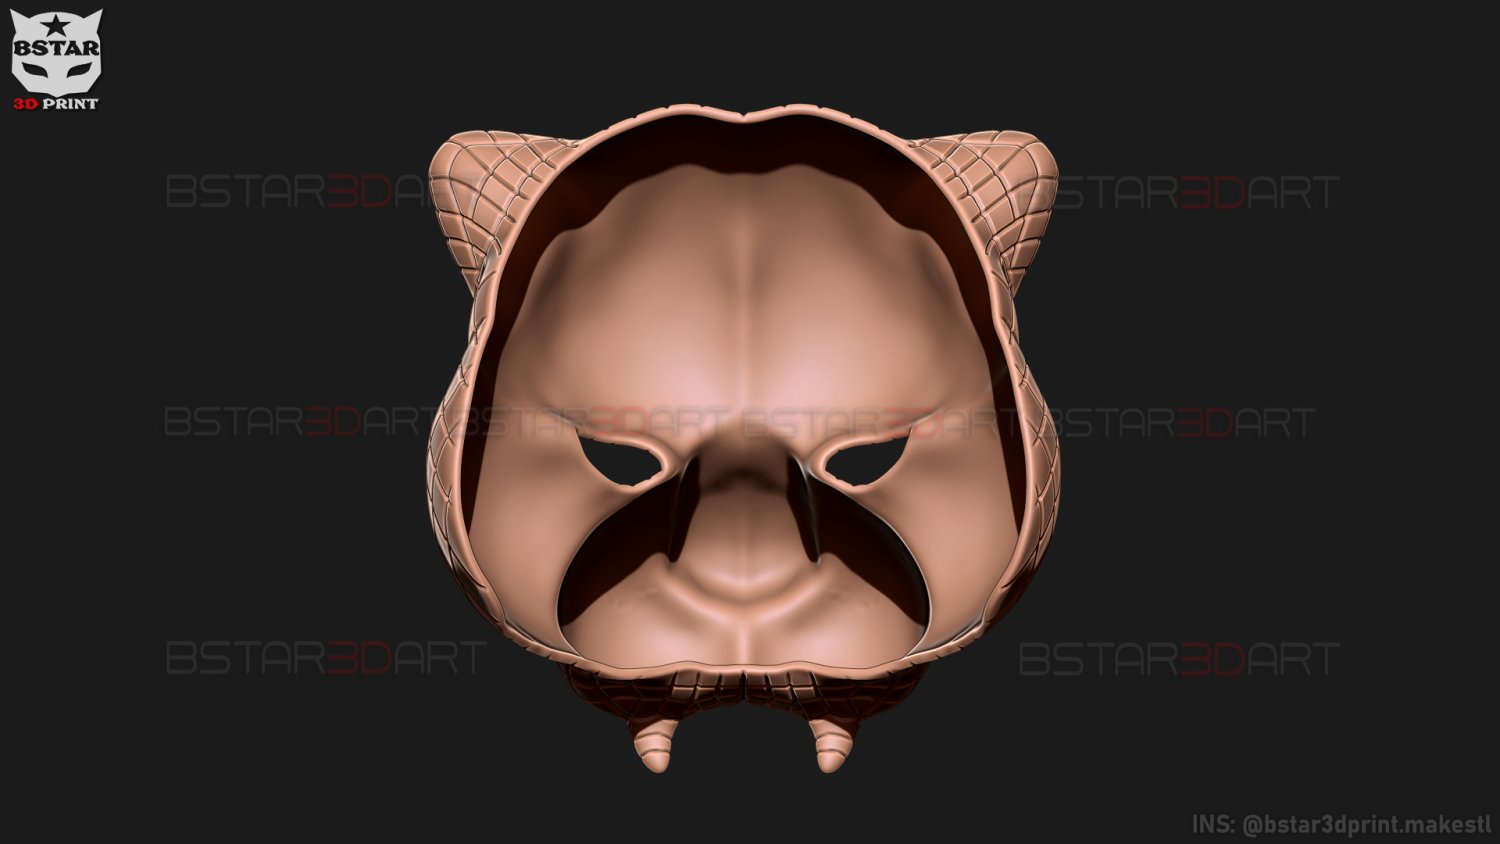 Tigre mascara juego del calamar vip squid game mask vip tiger 3D model 3D  printable